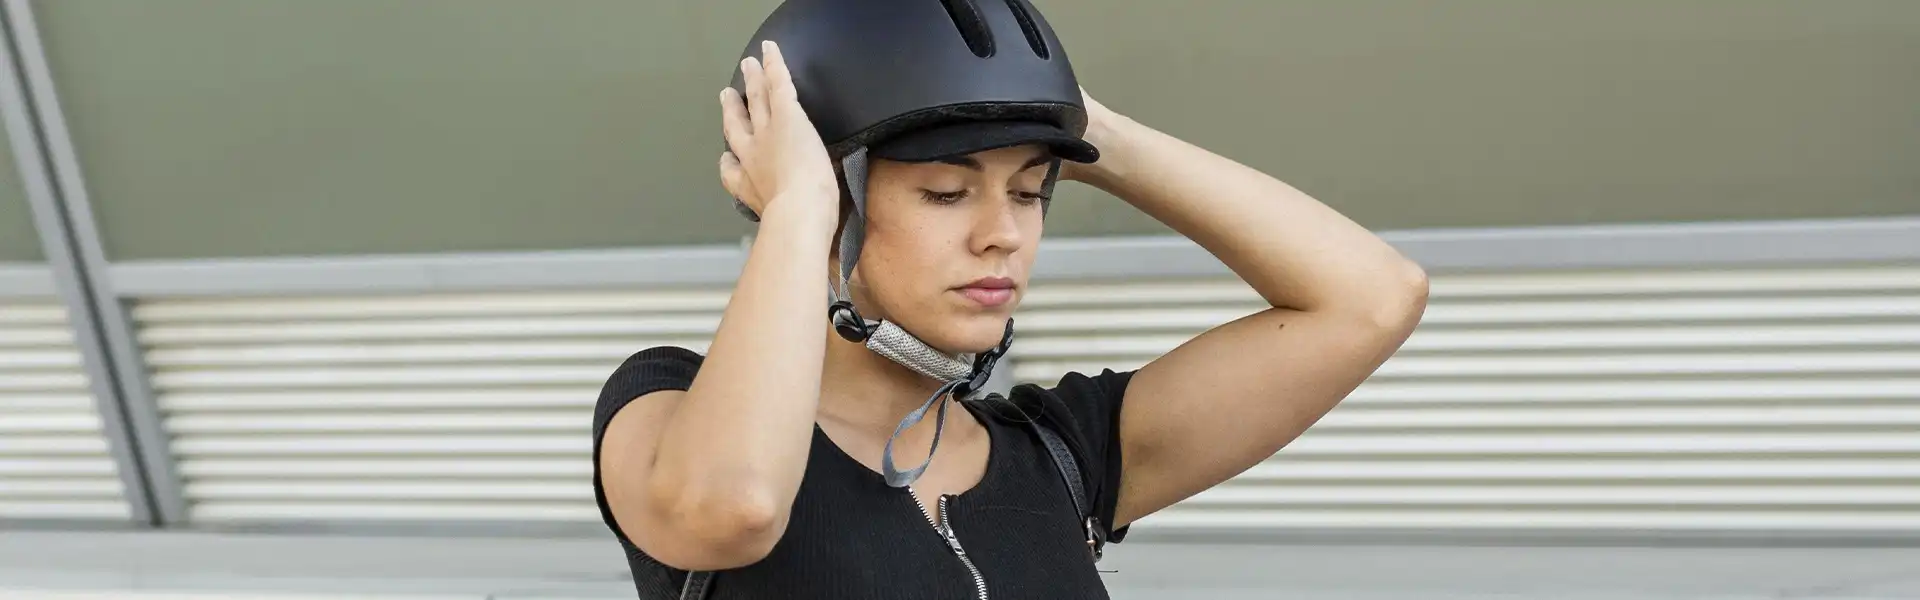 Proteja su cabeza y conduzca con seguridad: La importancia de elegir el casco de bicicleta adecuado